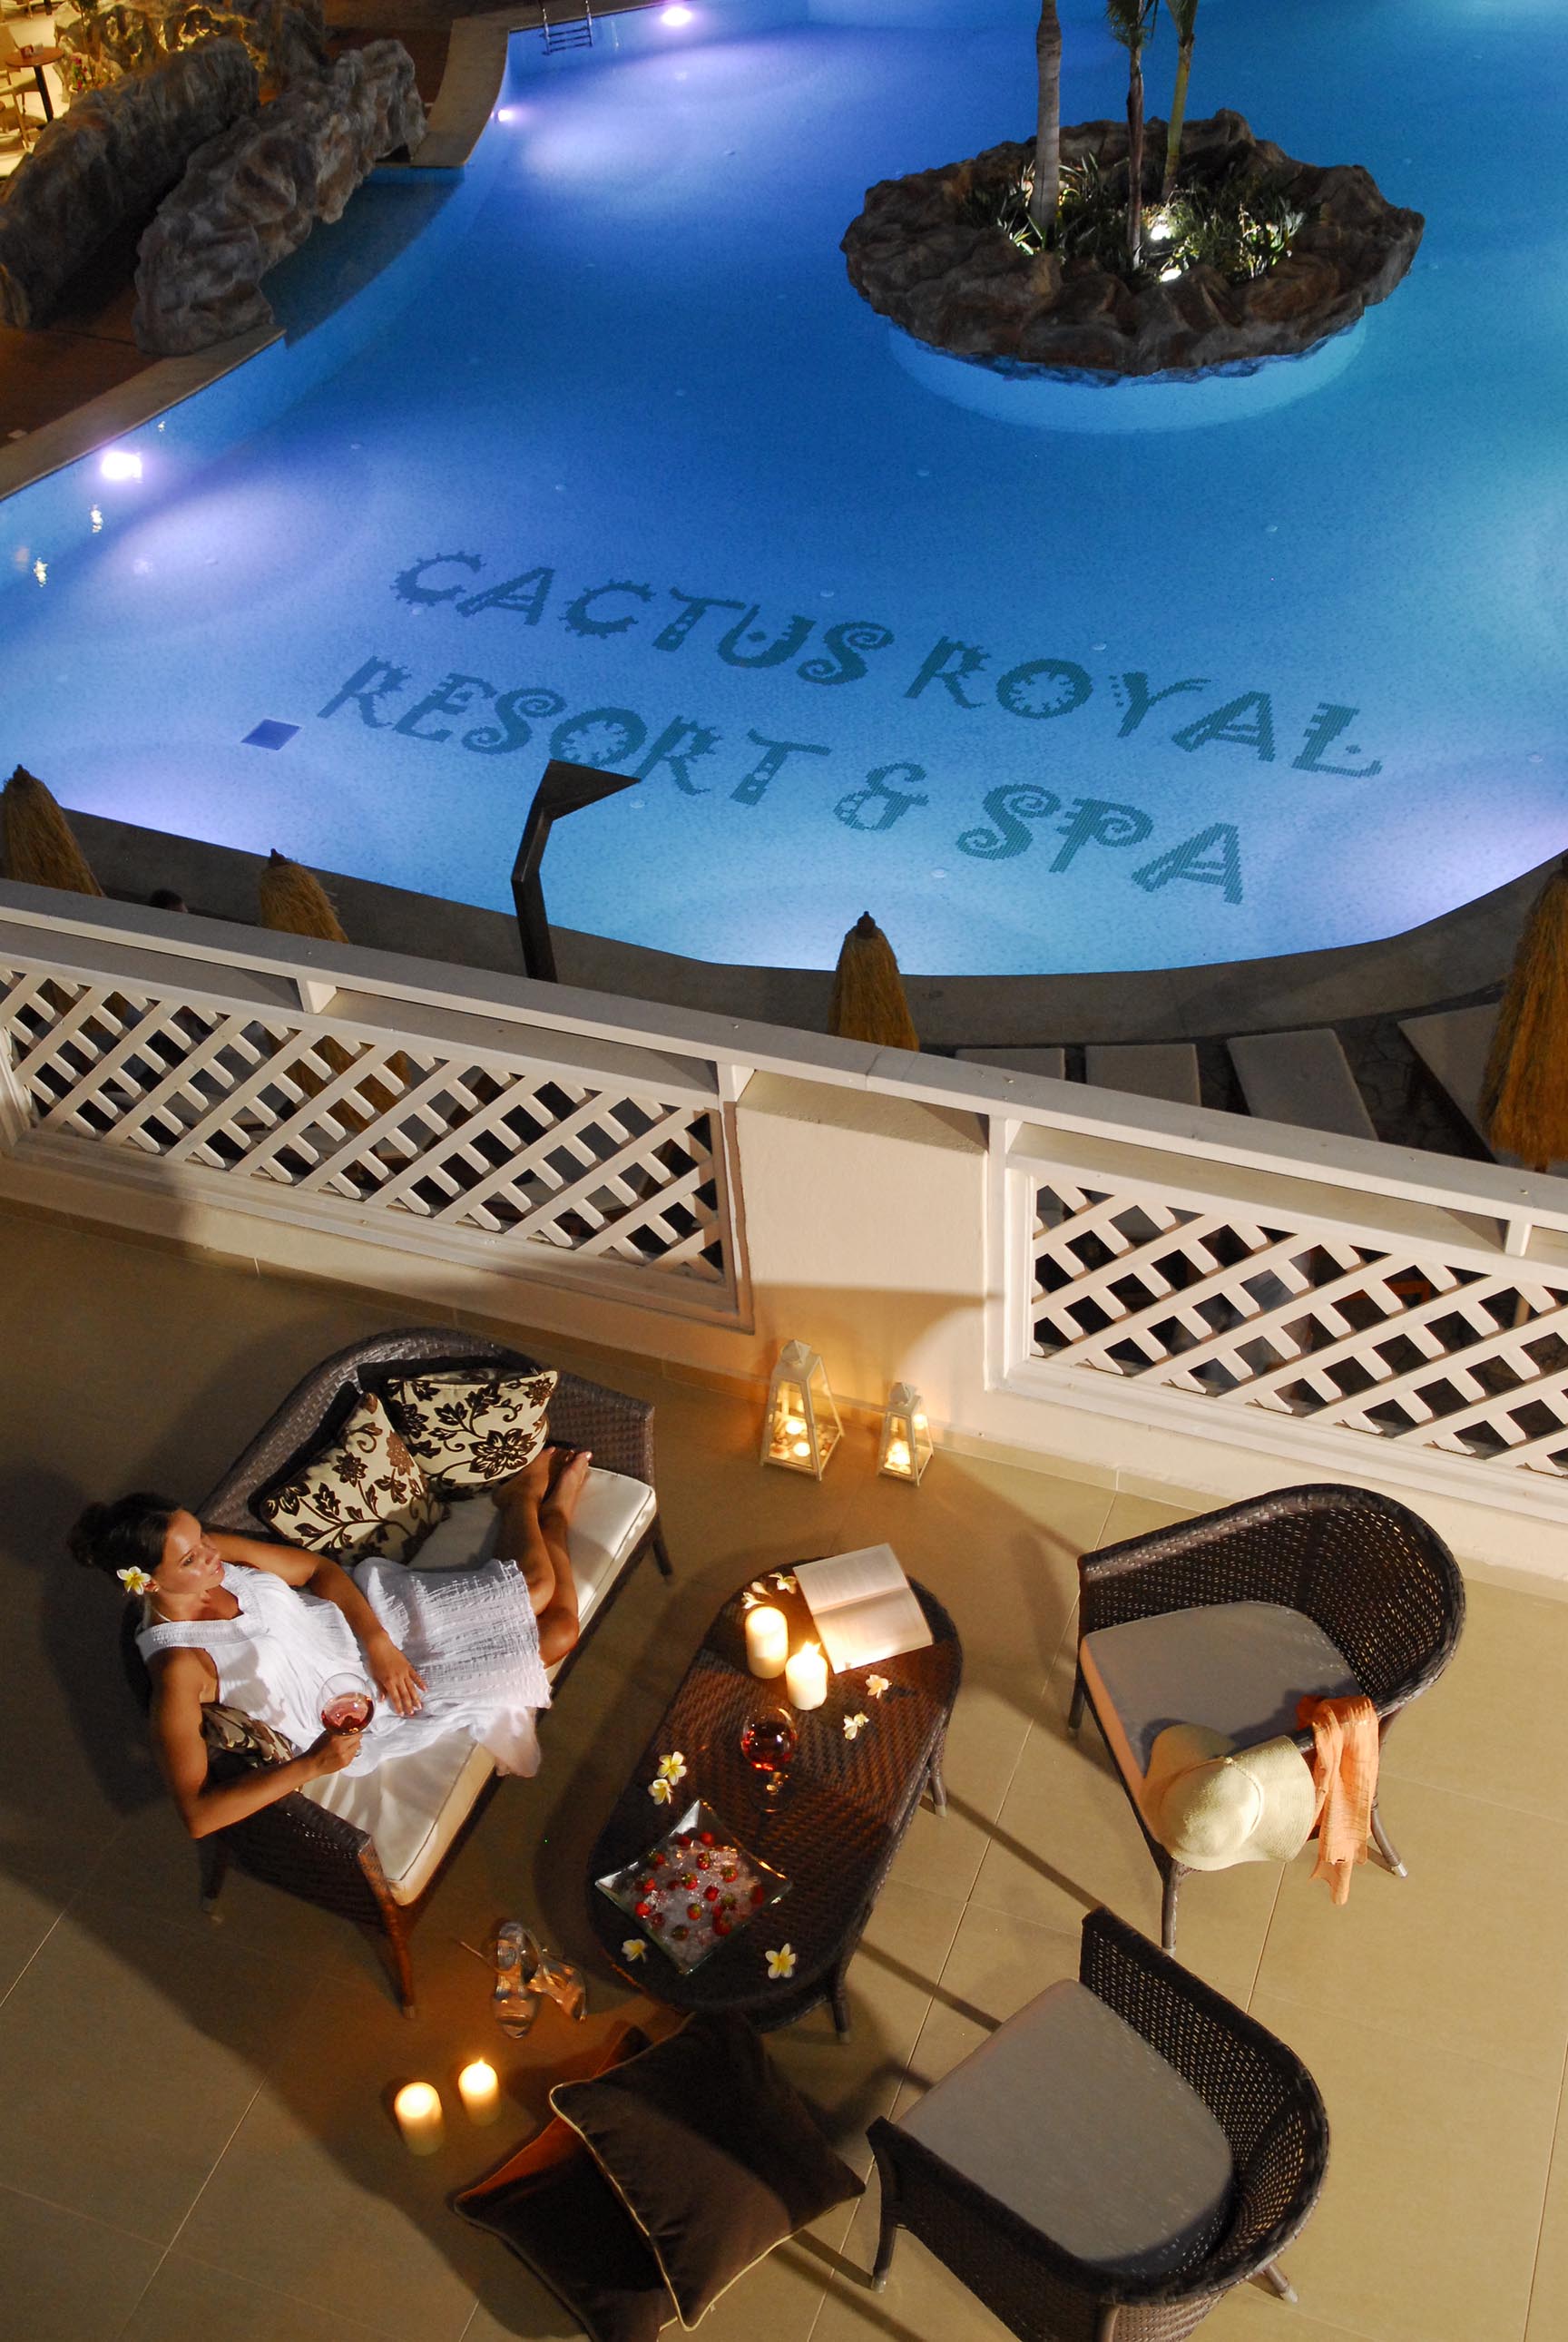 Διεθνής πιστοποίηση για το Cactus Royal Spa & Resort 